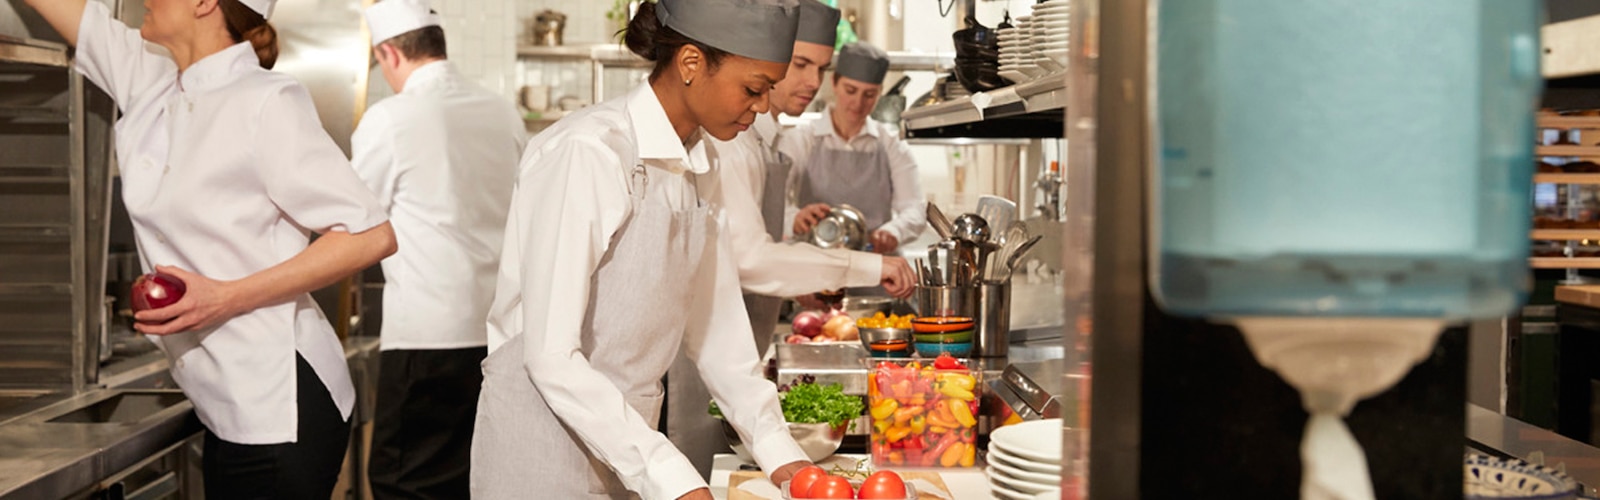 Frauen und Männer in einer Restaurantküche beim Zubereiten von Speisen